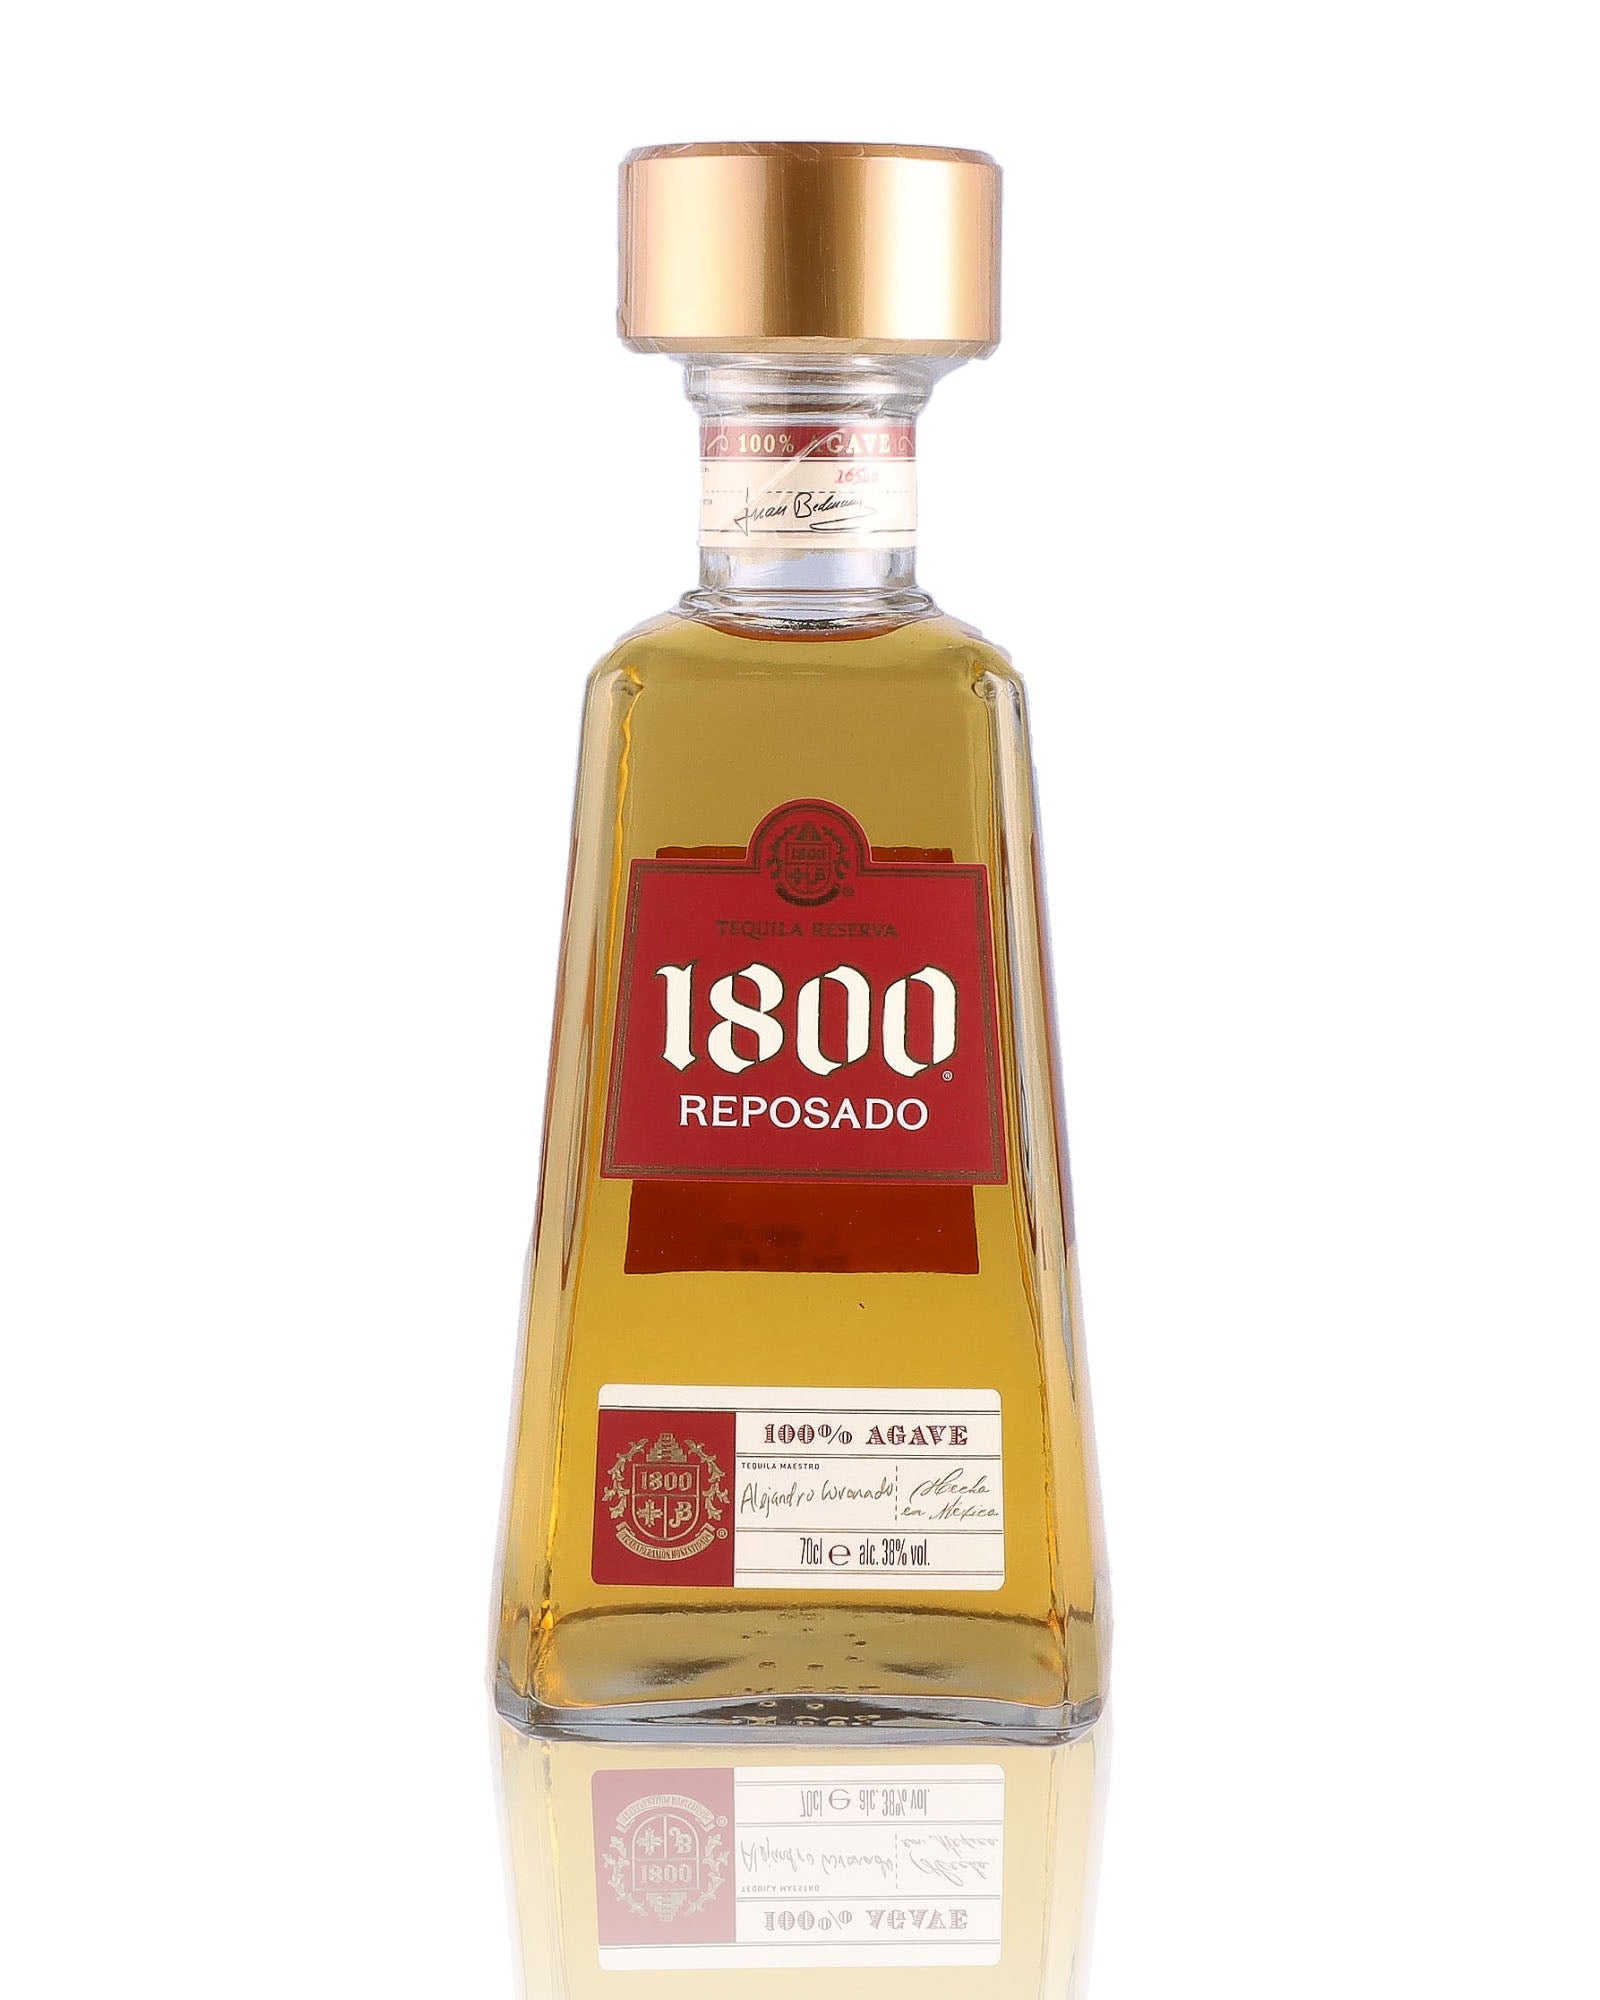 Une bouteille de Tequila, de la marque 1800, nommée Reposado.